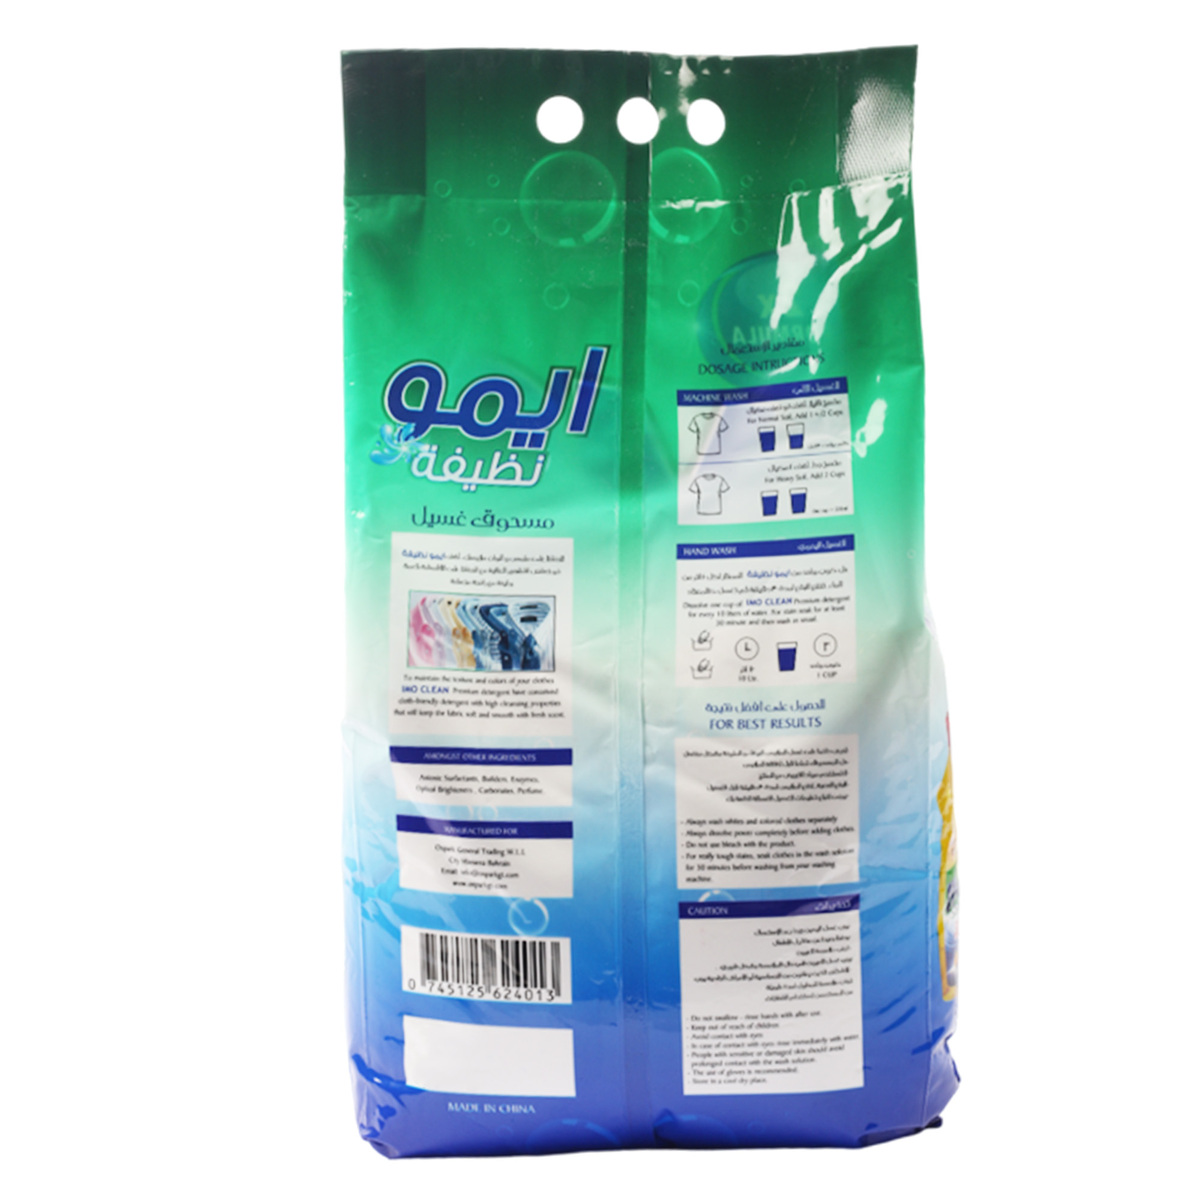 IMO Clean Detergent Powder 3 kg